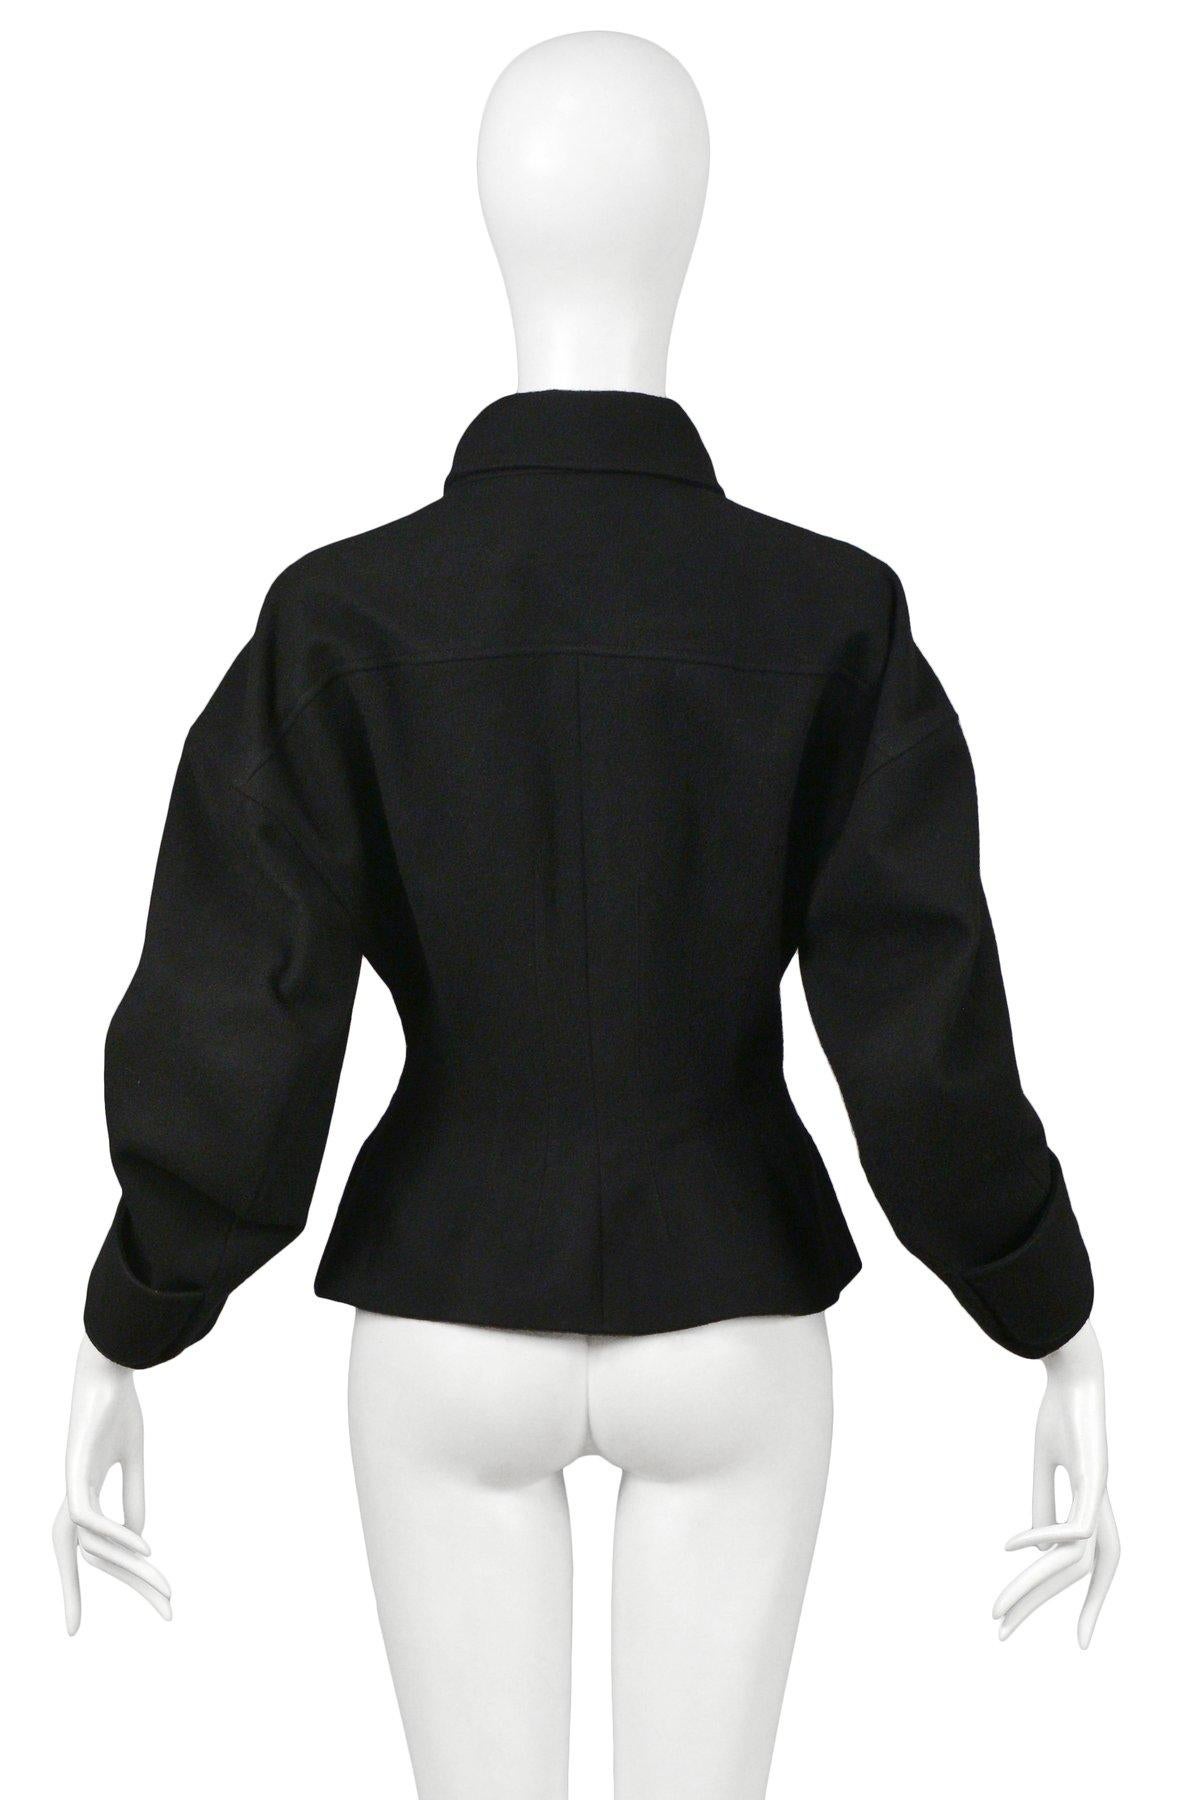 Balenciaga by Nicolas Ghesquiere Black Western Inspired Jacket 2003 1